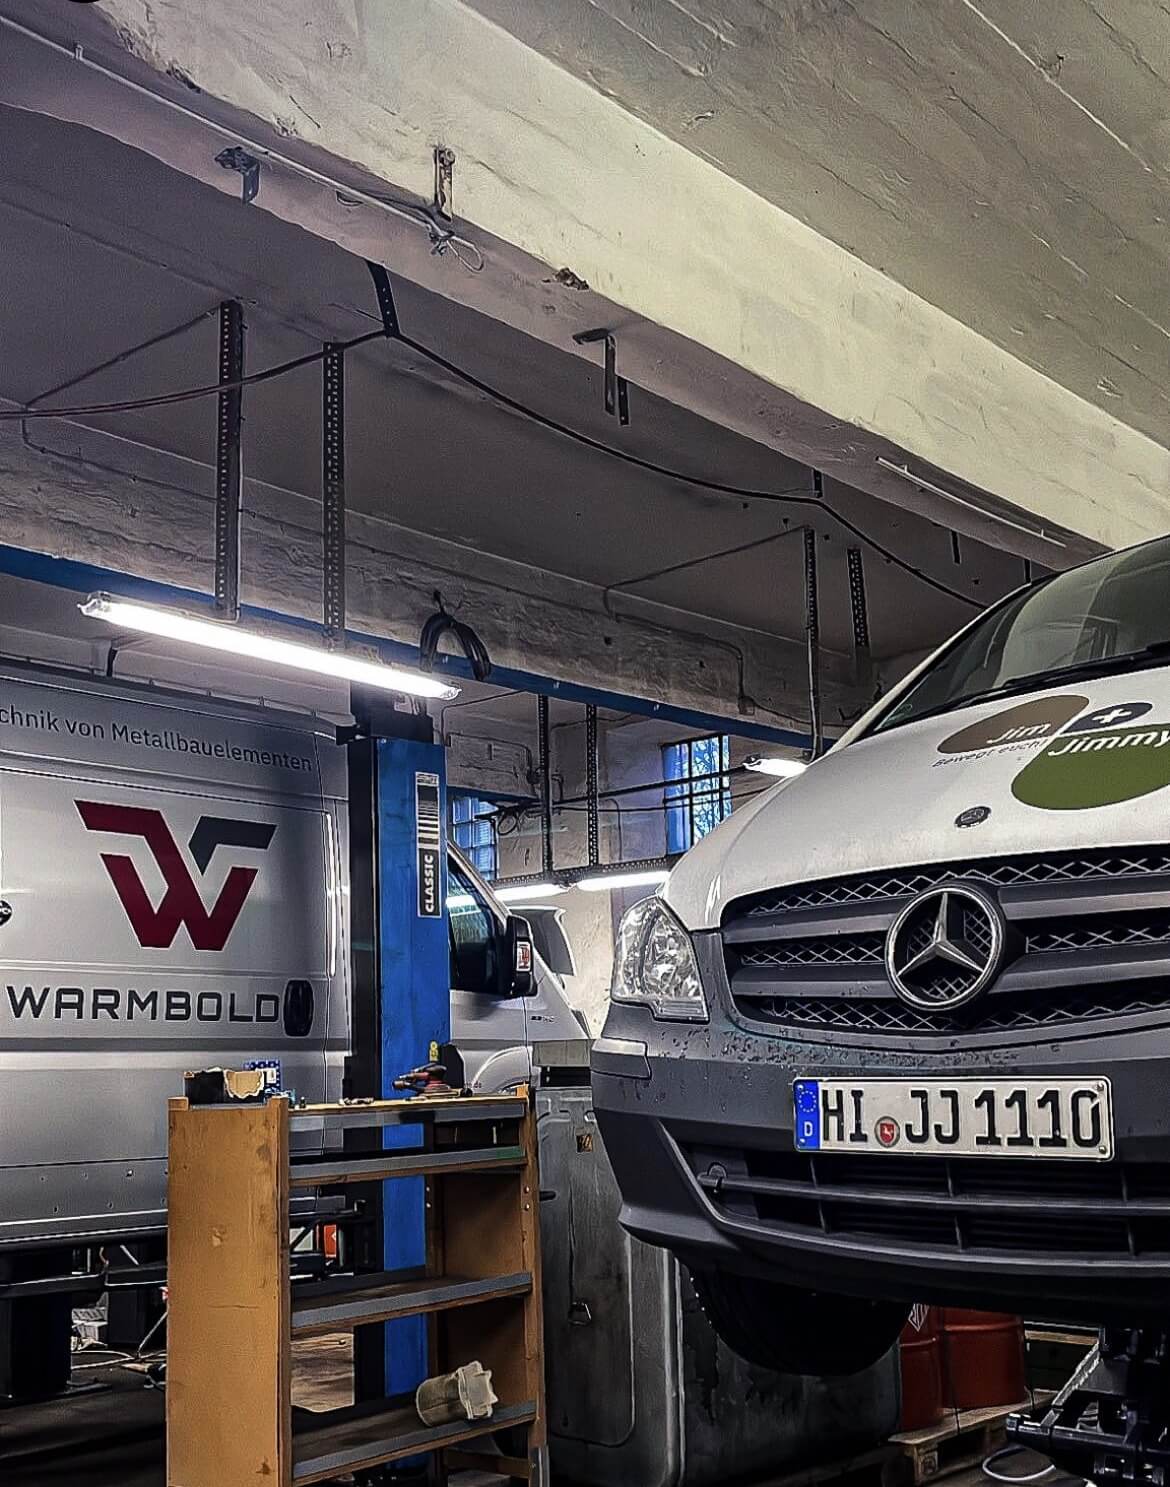 Weißer Mercedes Transporter auf einer Hebebühne in einer Werkstatt mit Service für Firmenflotten, erkennbar an den Logos und Werbung für technische Dienstleistungen